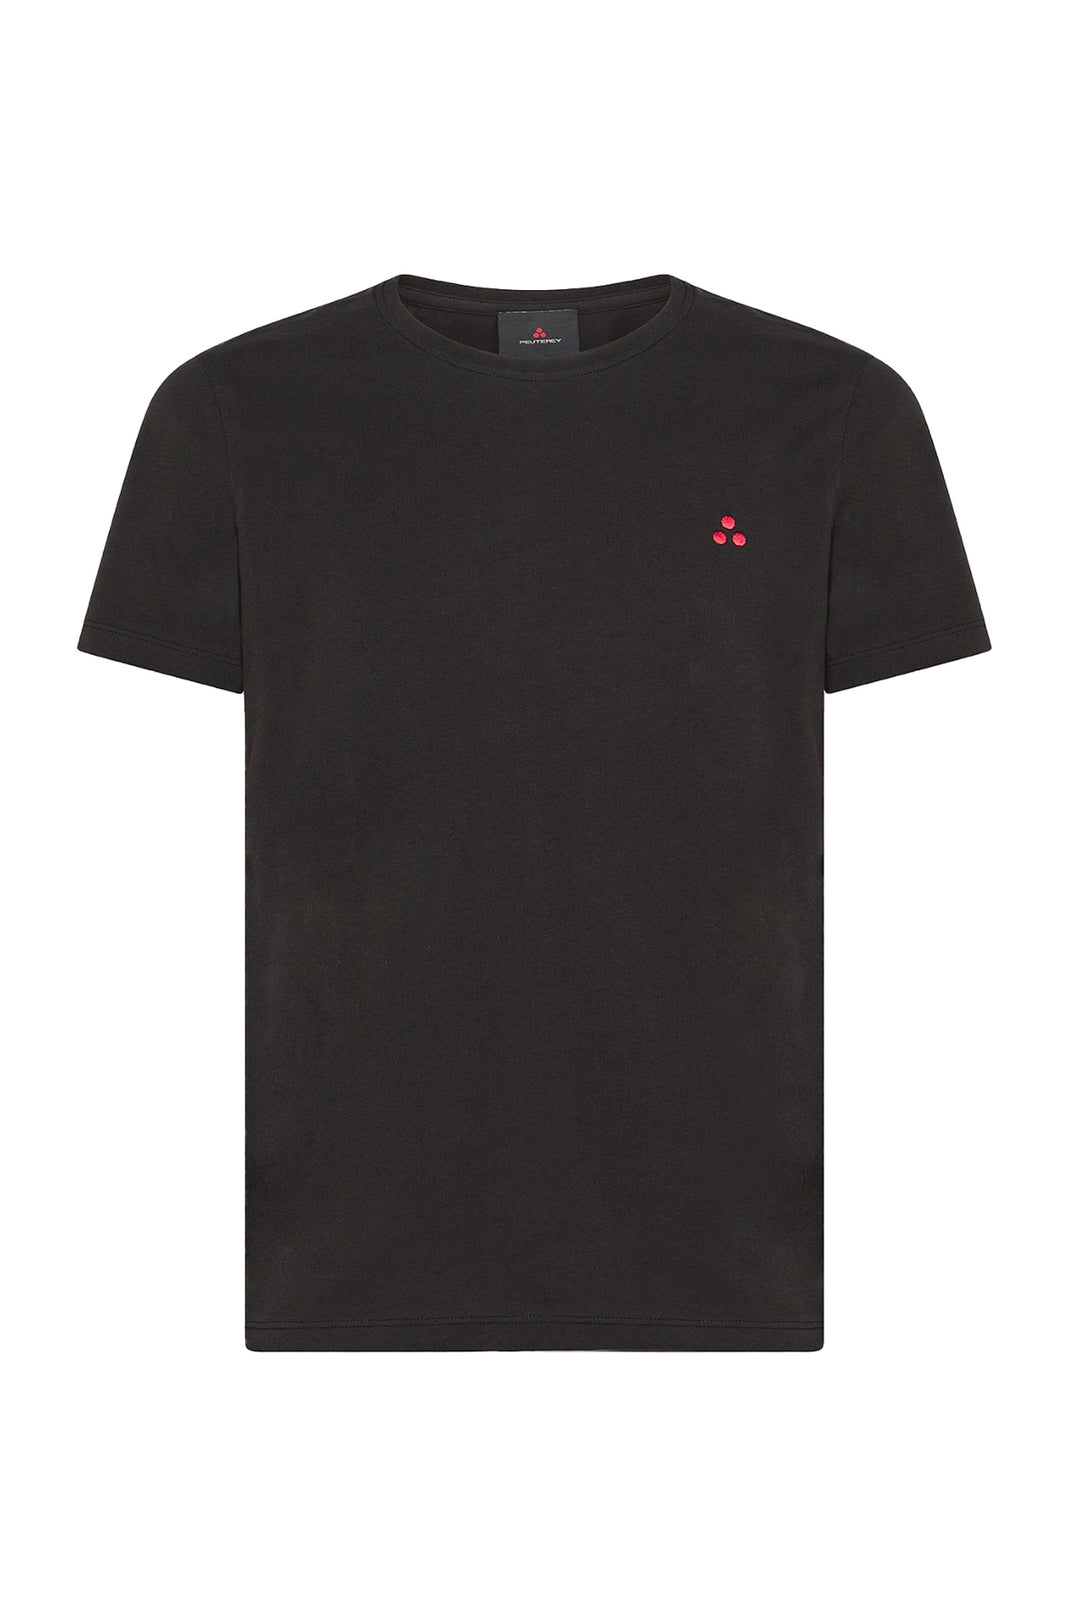 PEUTEREY T-shirt nera in cotone con logo ricamato sul petto - Mancinelli 1954